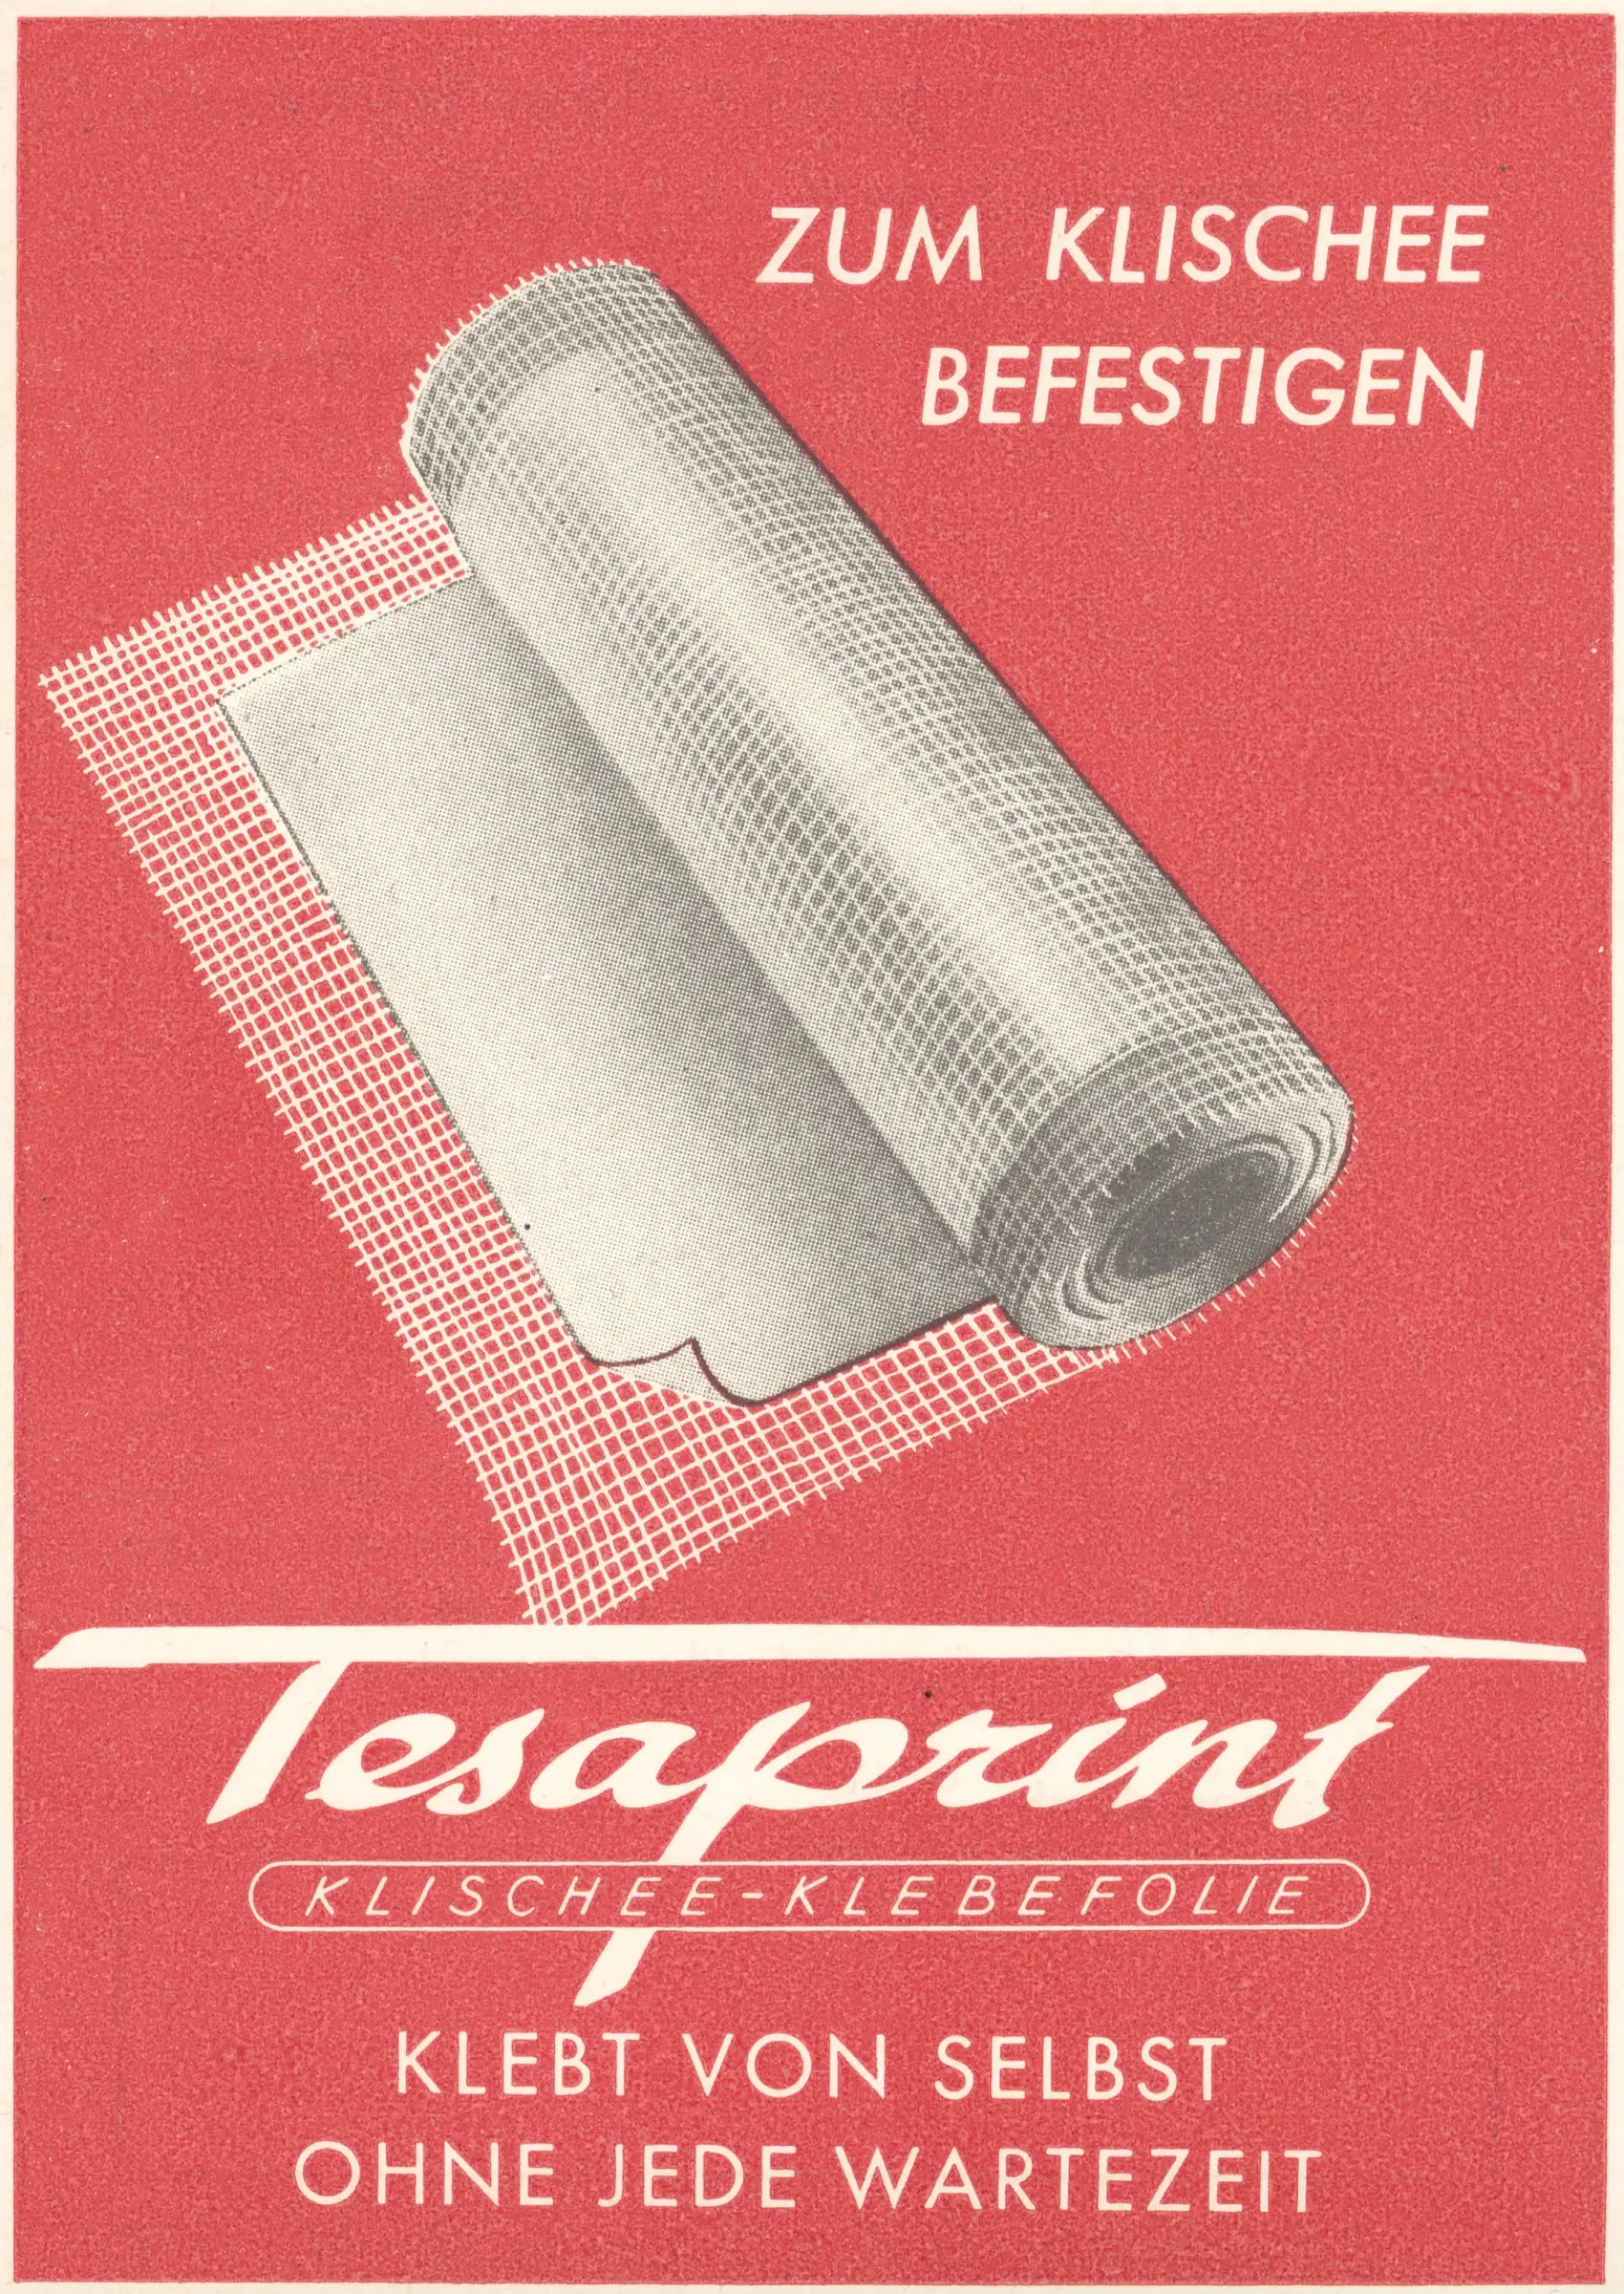 tesaprint®の広告（1950年）